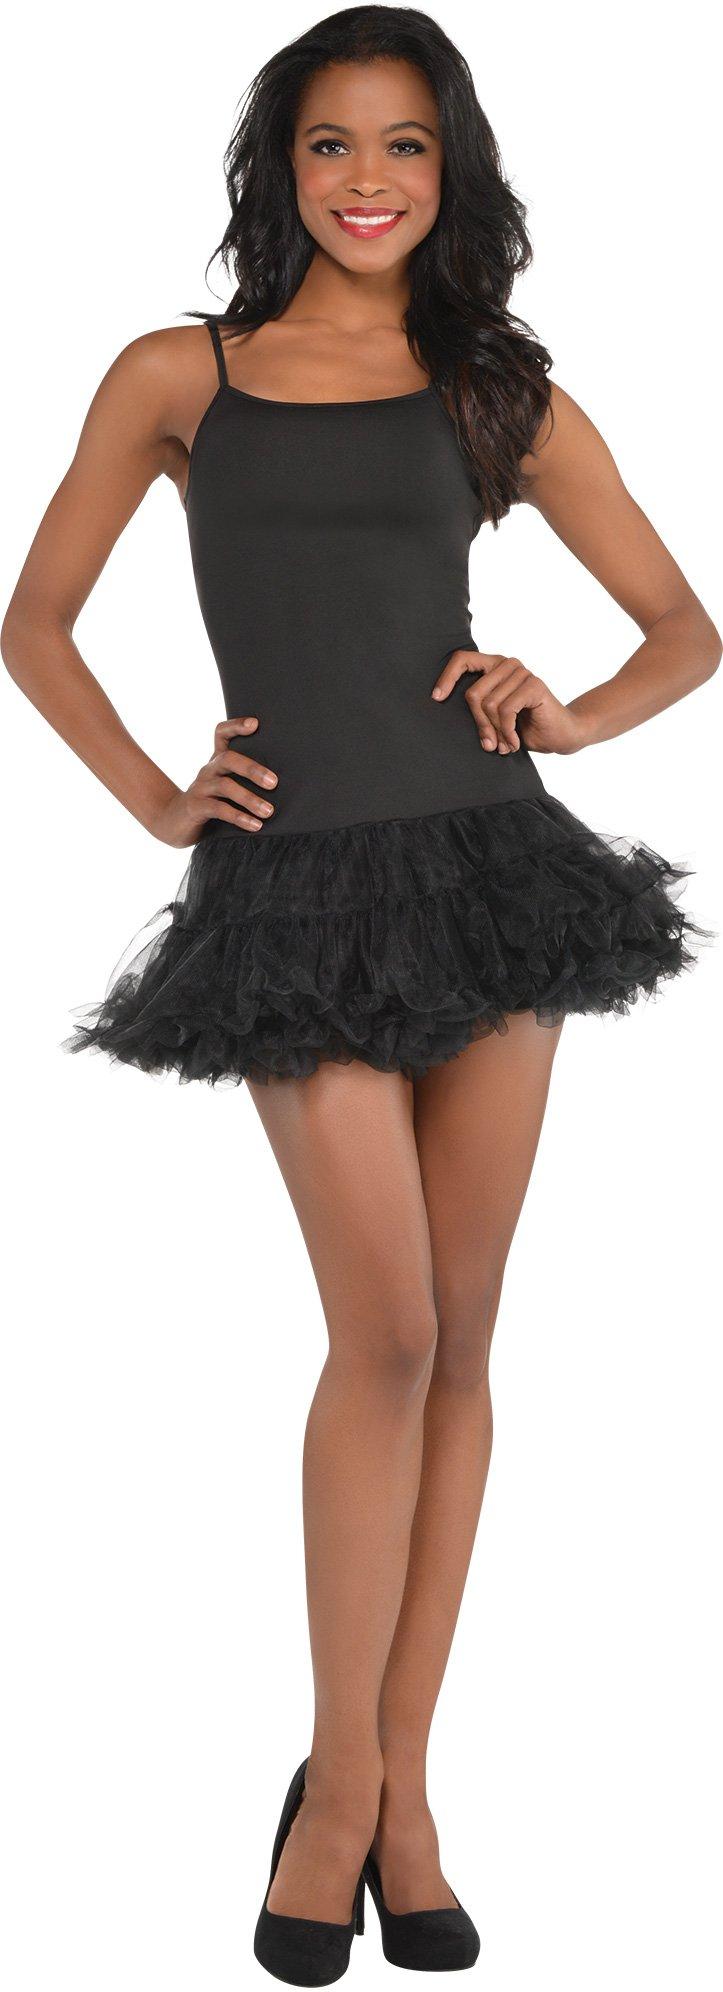 Black Petticoat Dress